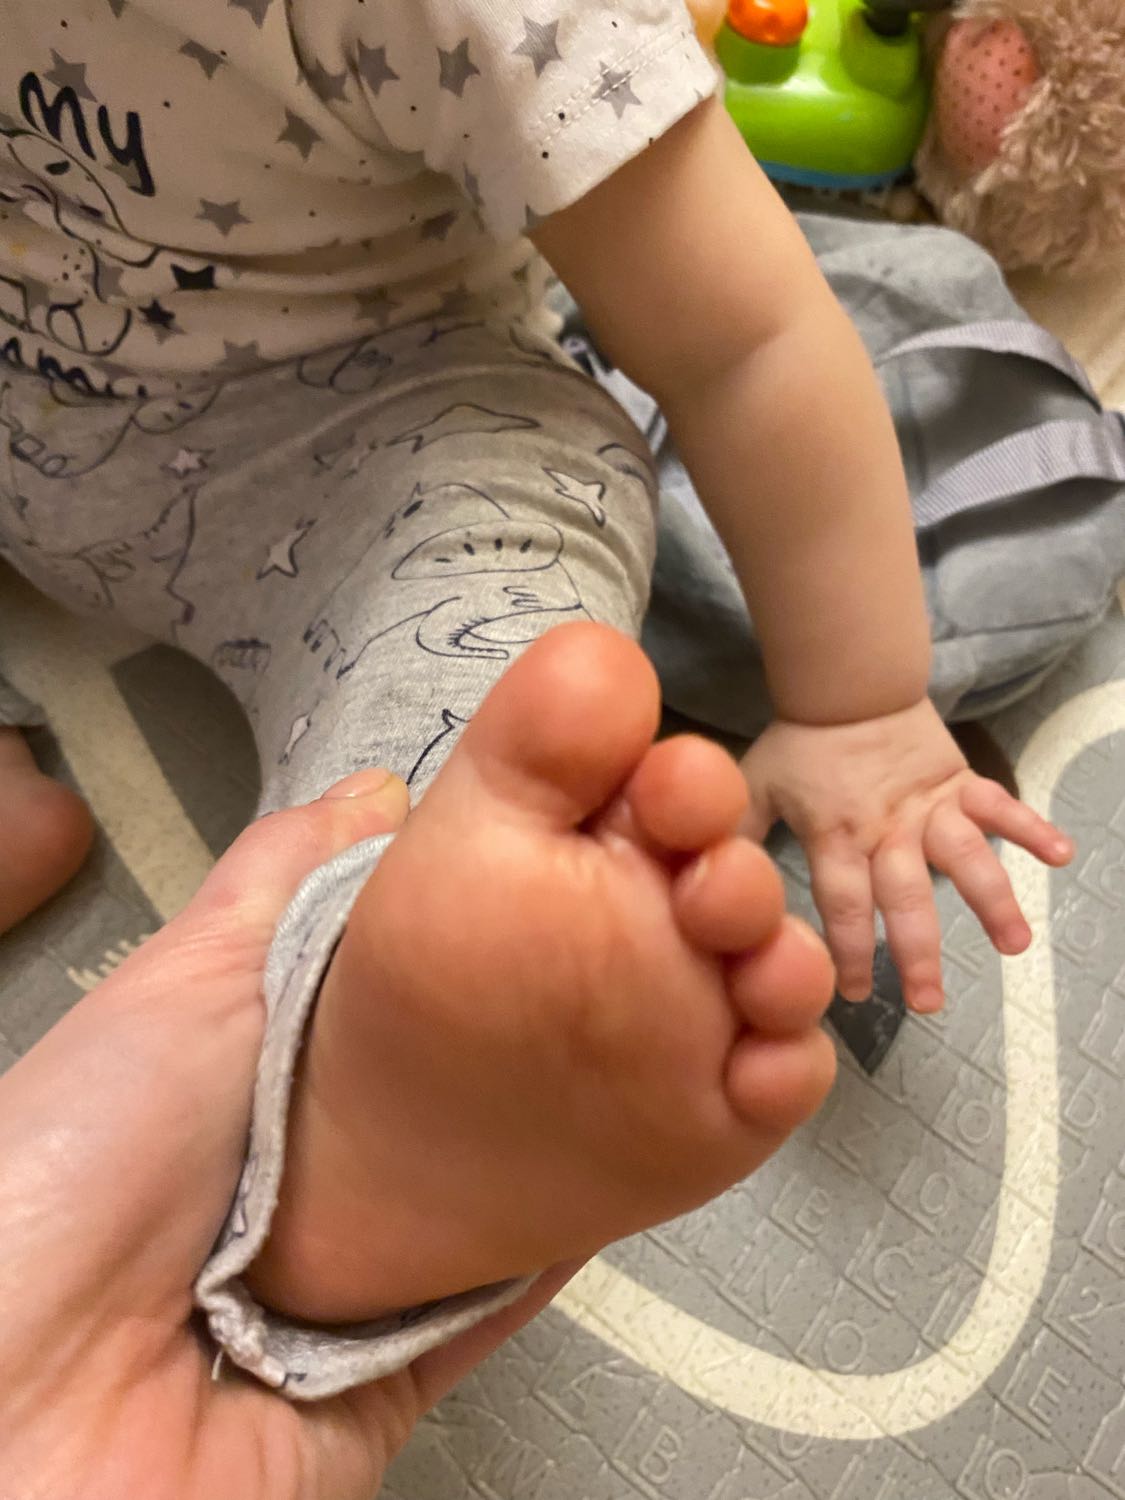 Сегодня обнаружила, что у ребенка кожа облазит на пальчиках ног. На чт... image №2